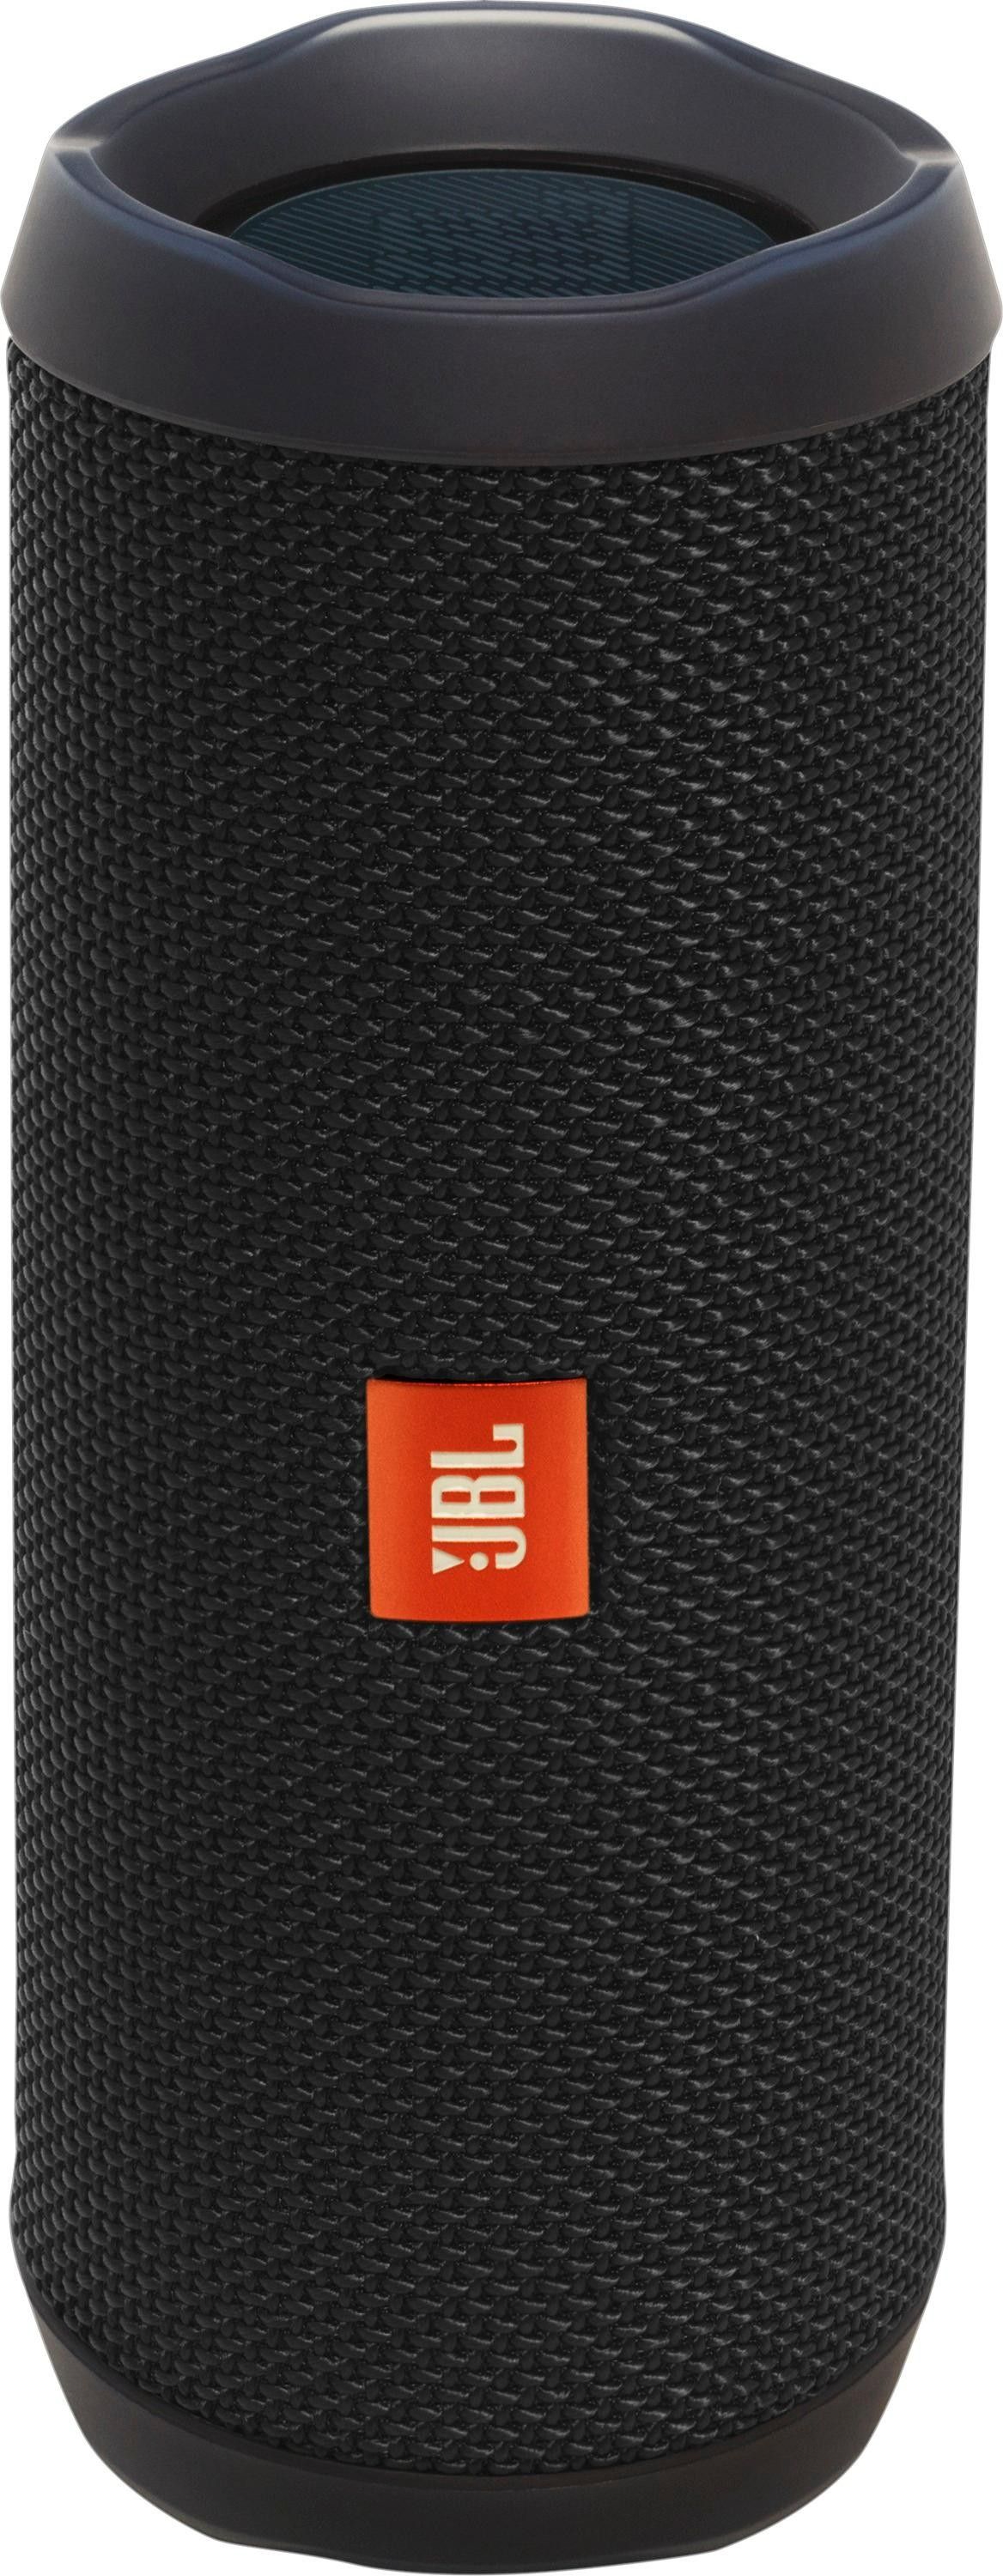 JBL Flip 4 Portable Bluetooth Speaker Black JBLFLIP4BLKAM - Best Buy | Best Buy U.S.